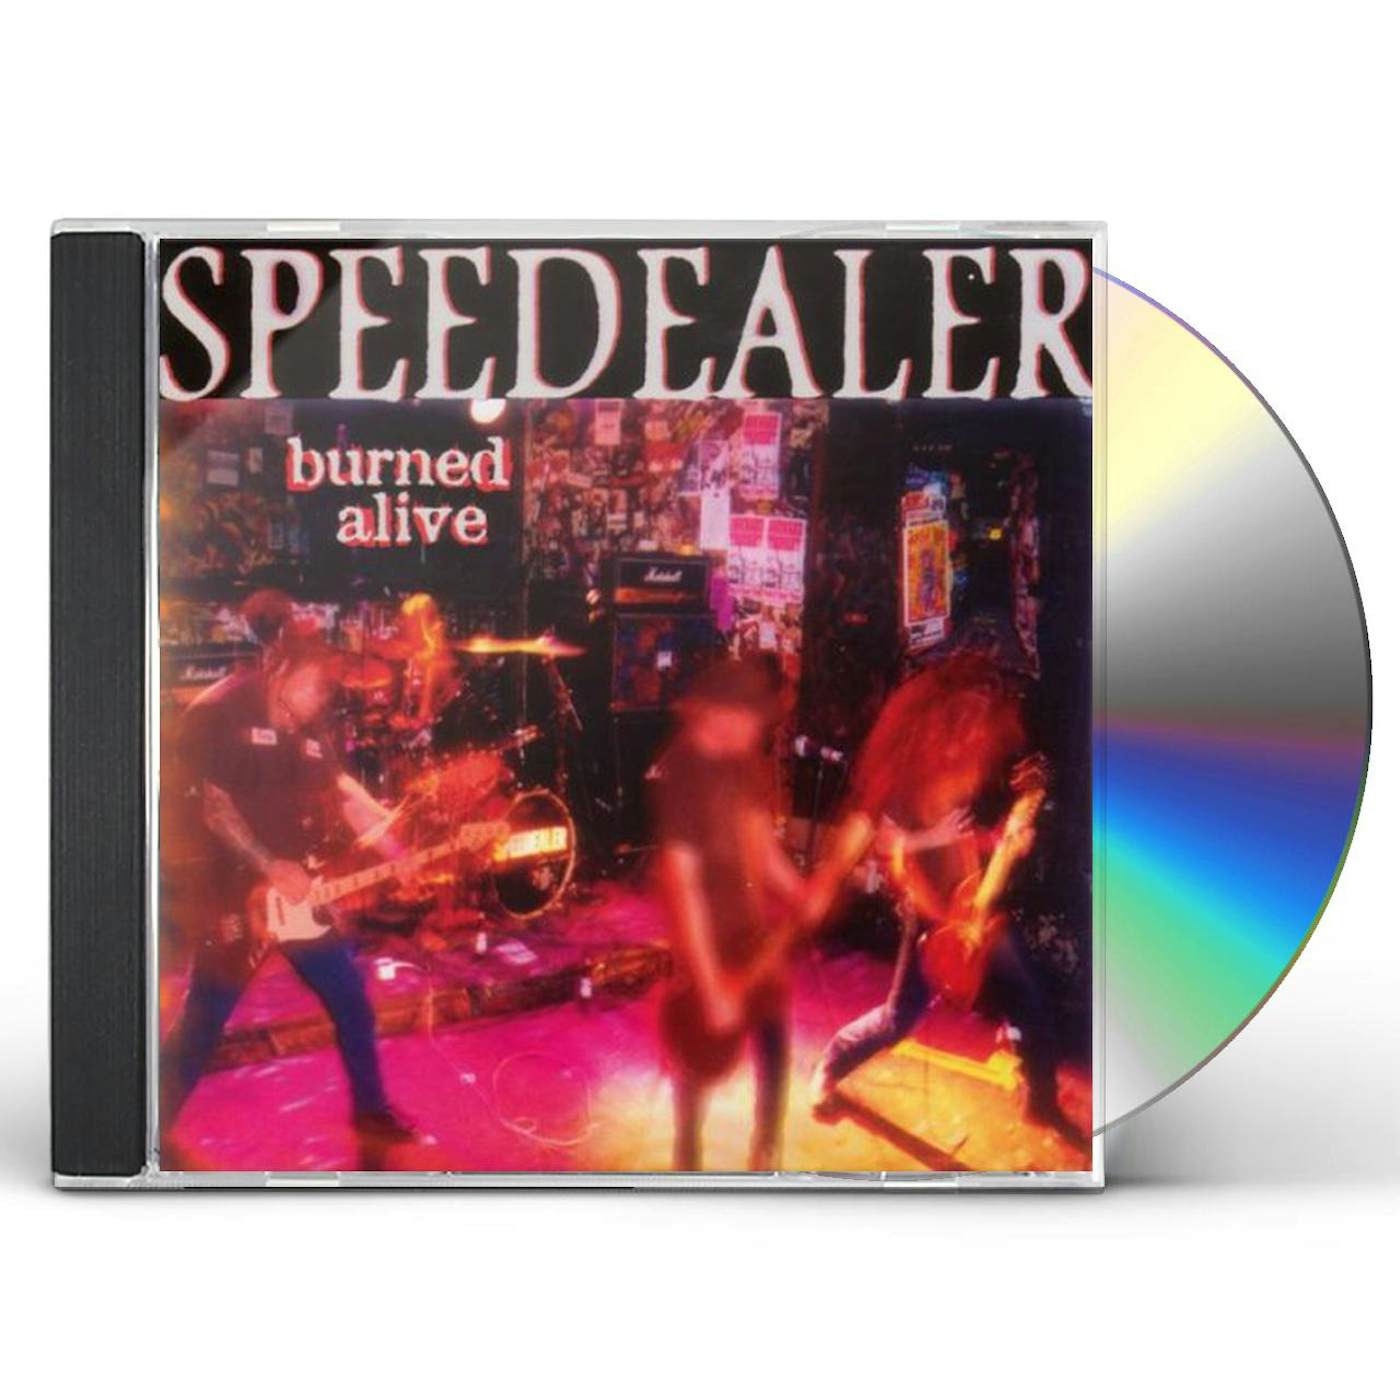 Speedealer BURNED ALIVE CD